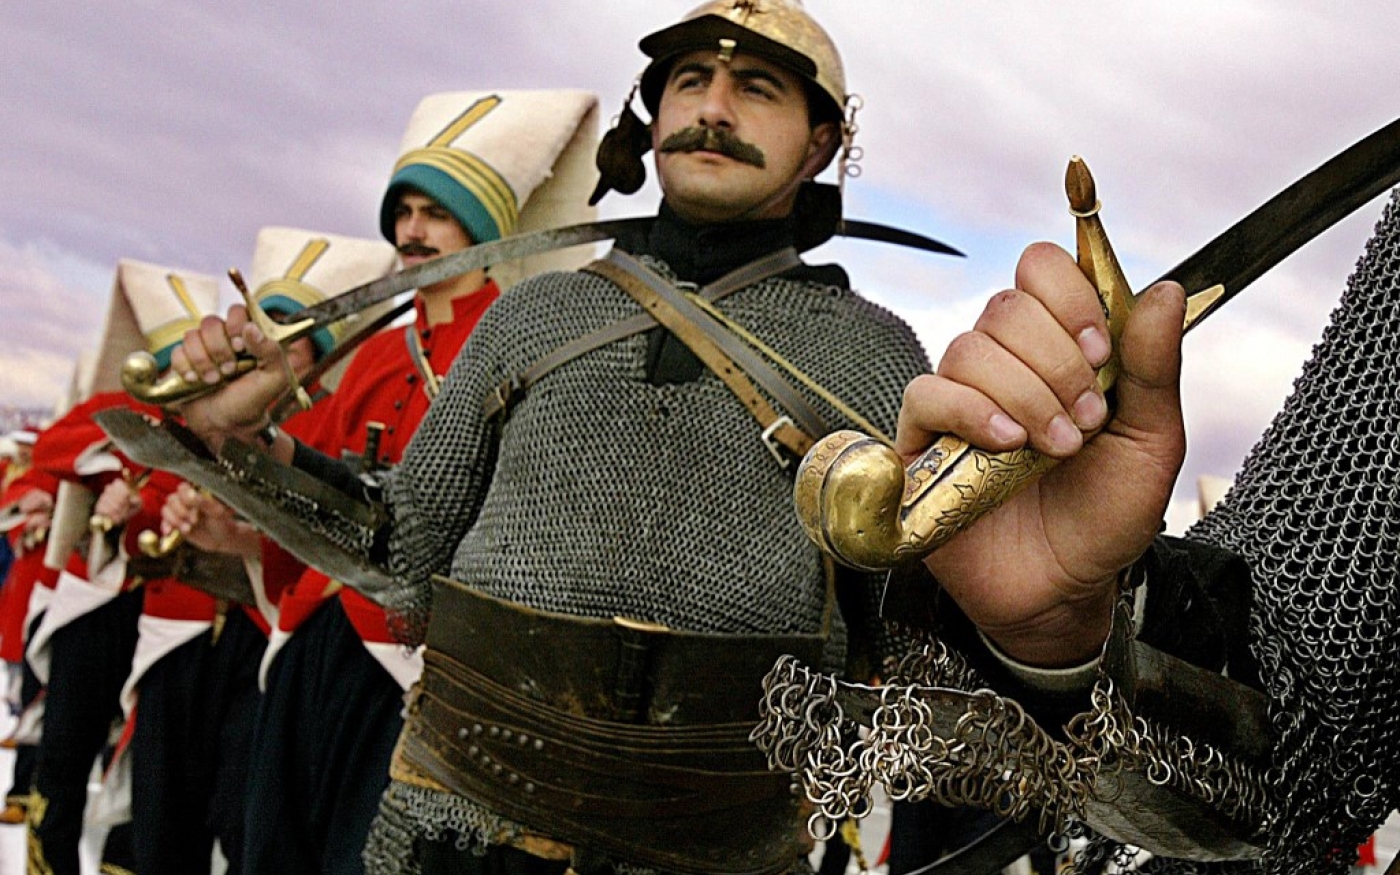 Un groupe militaire symbolique de l’ancien Empire ottoman appelé « Mehter » défile à Ankara le 29 octobre 2003, à l’occasion du 80e anniversaire de la naissance de la Turquie en tant que république (AFP/Tarik Tinazay)